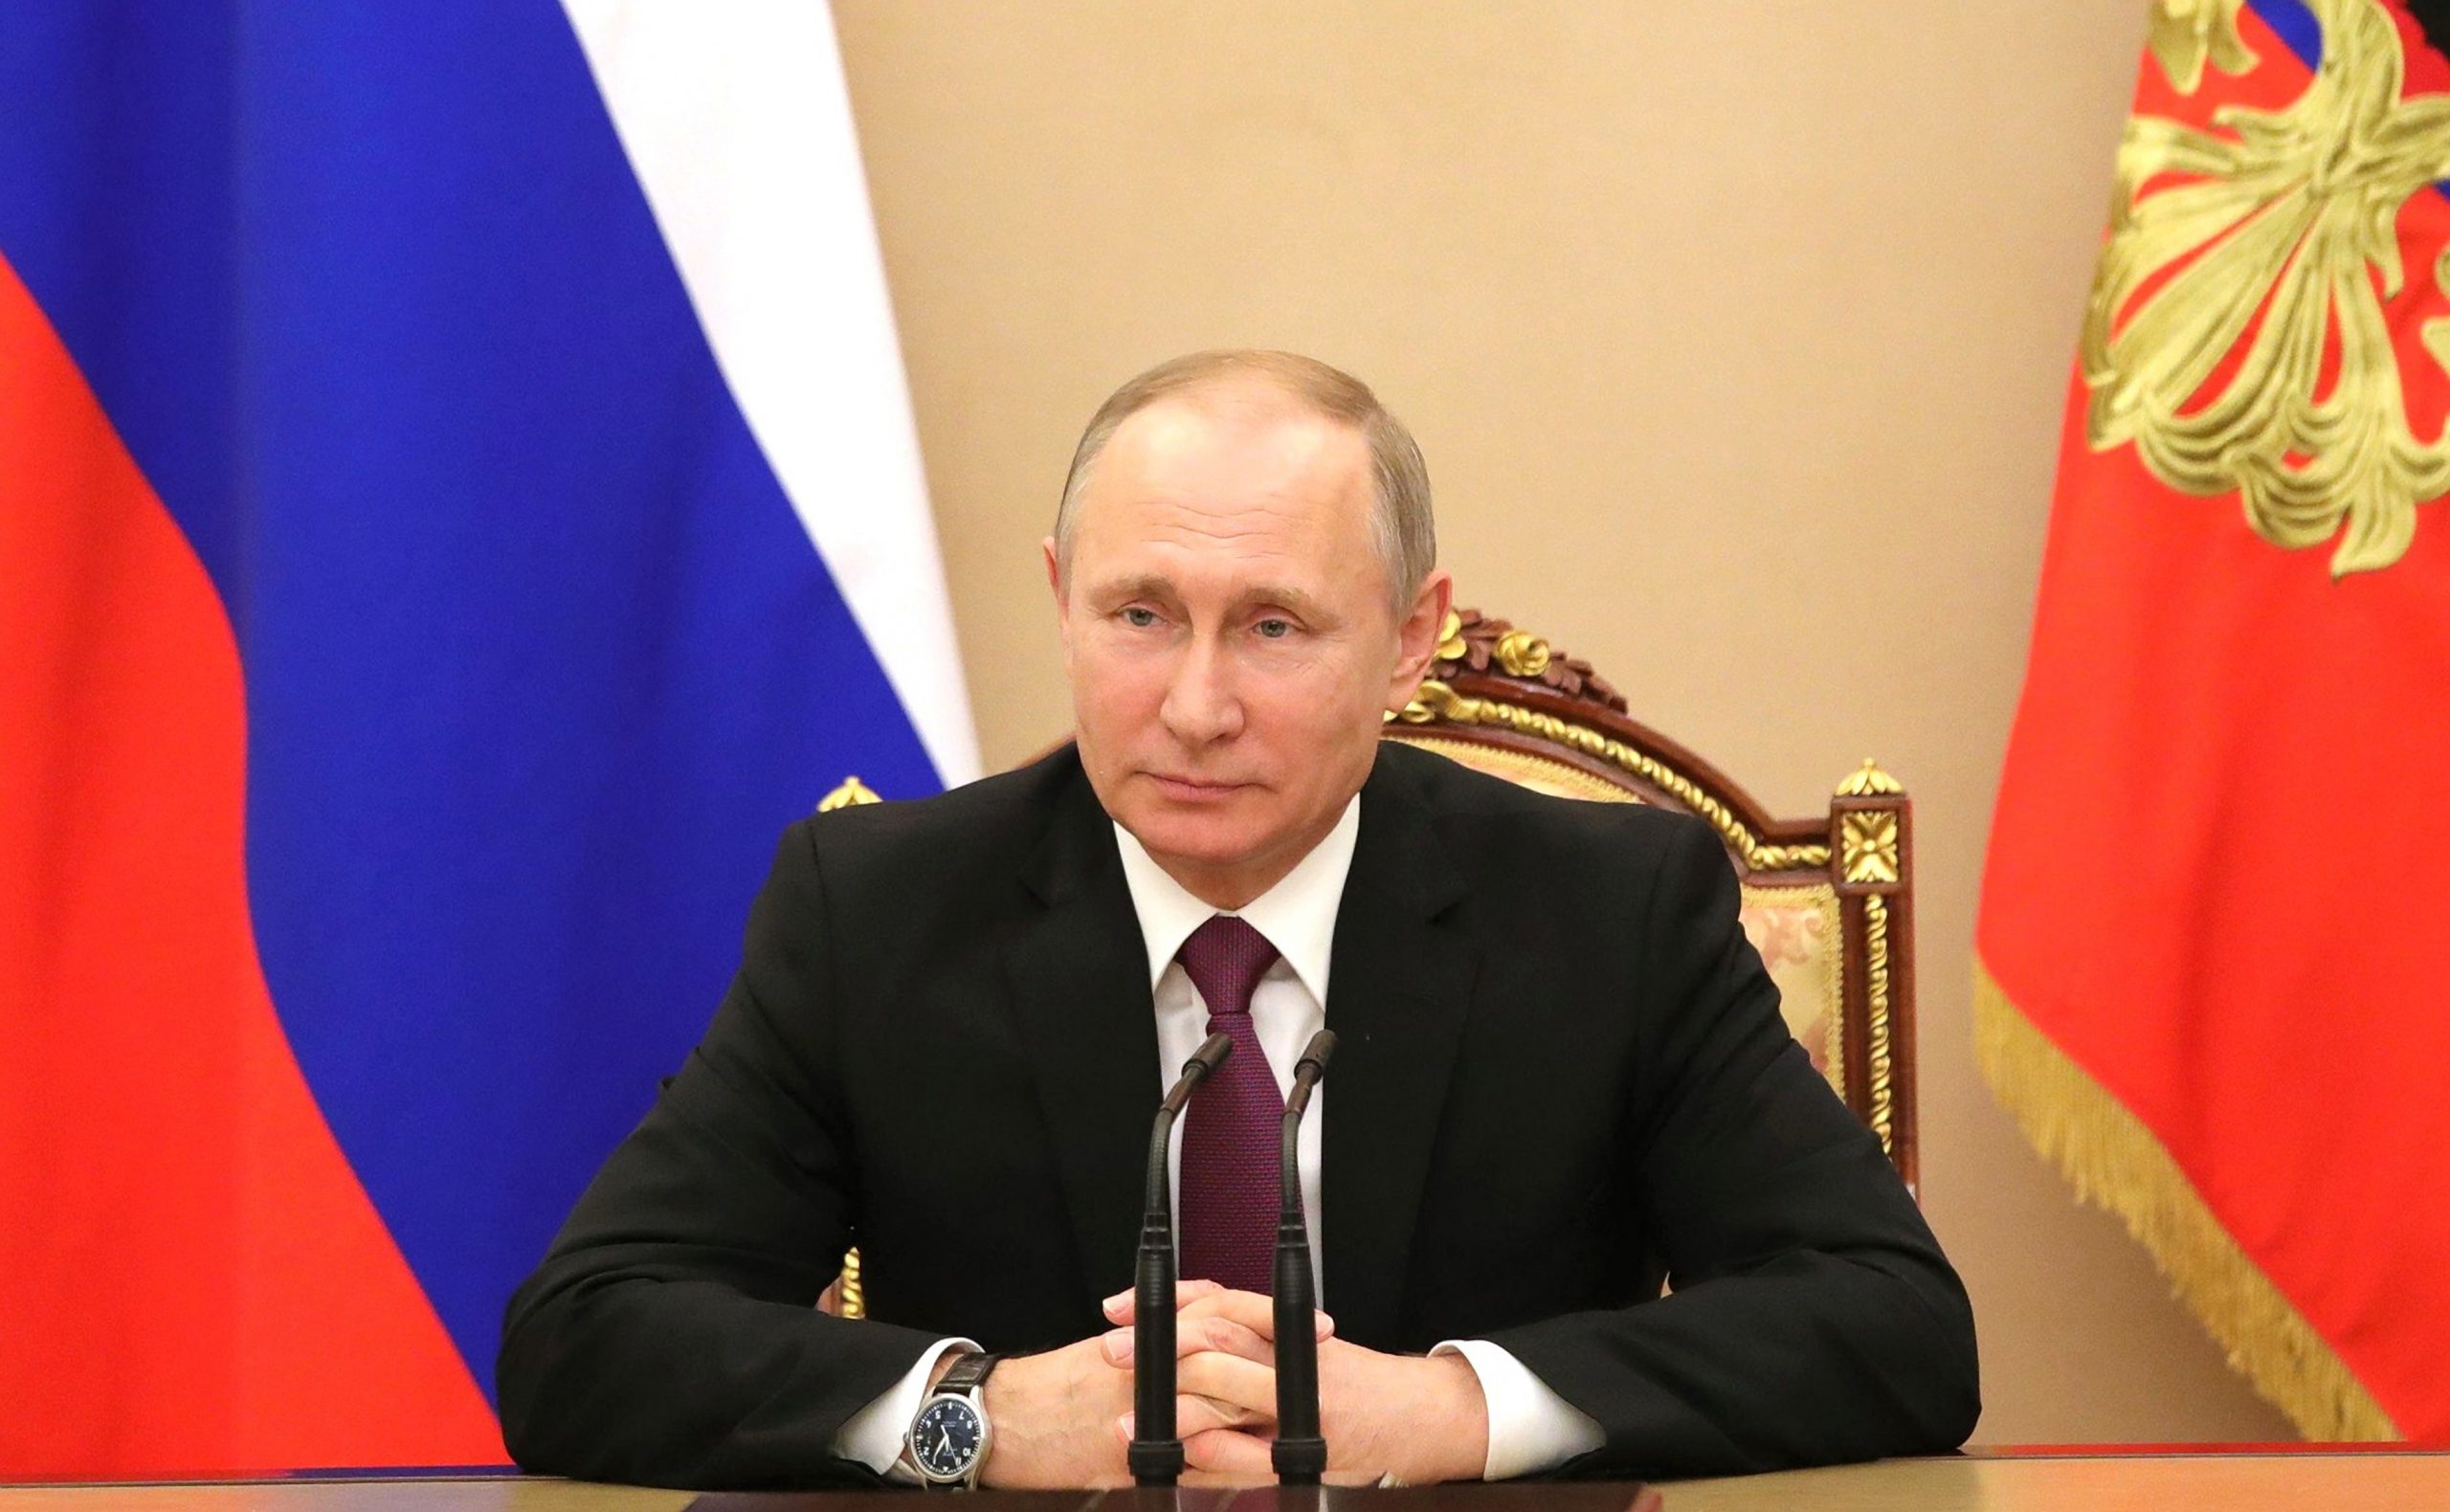 Рекордная явка: в регионах ПФО подведены итоги выборов Президента России.